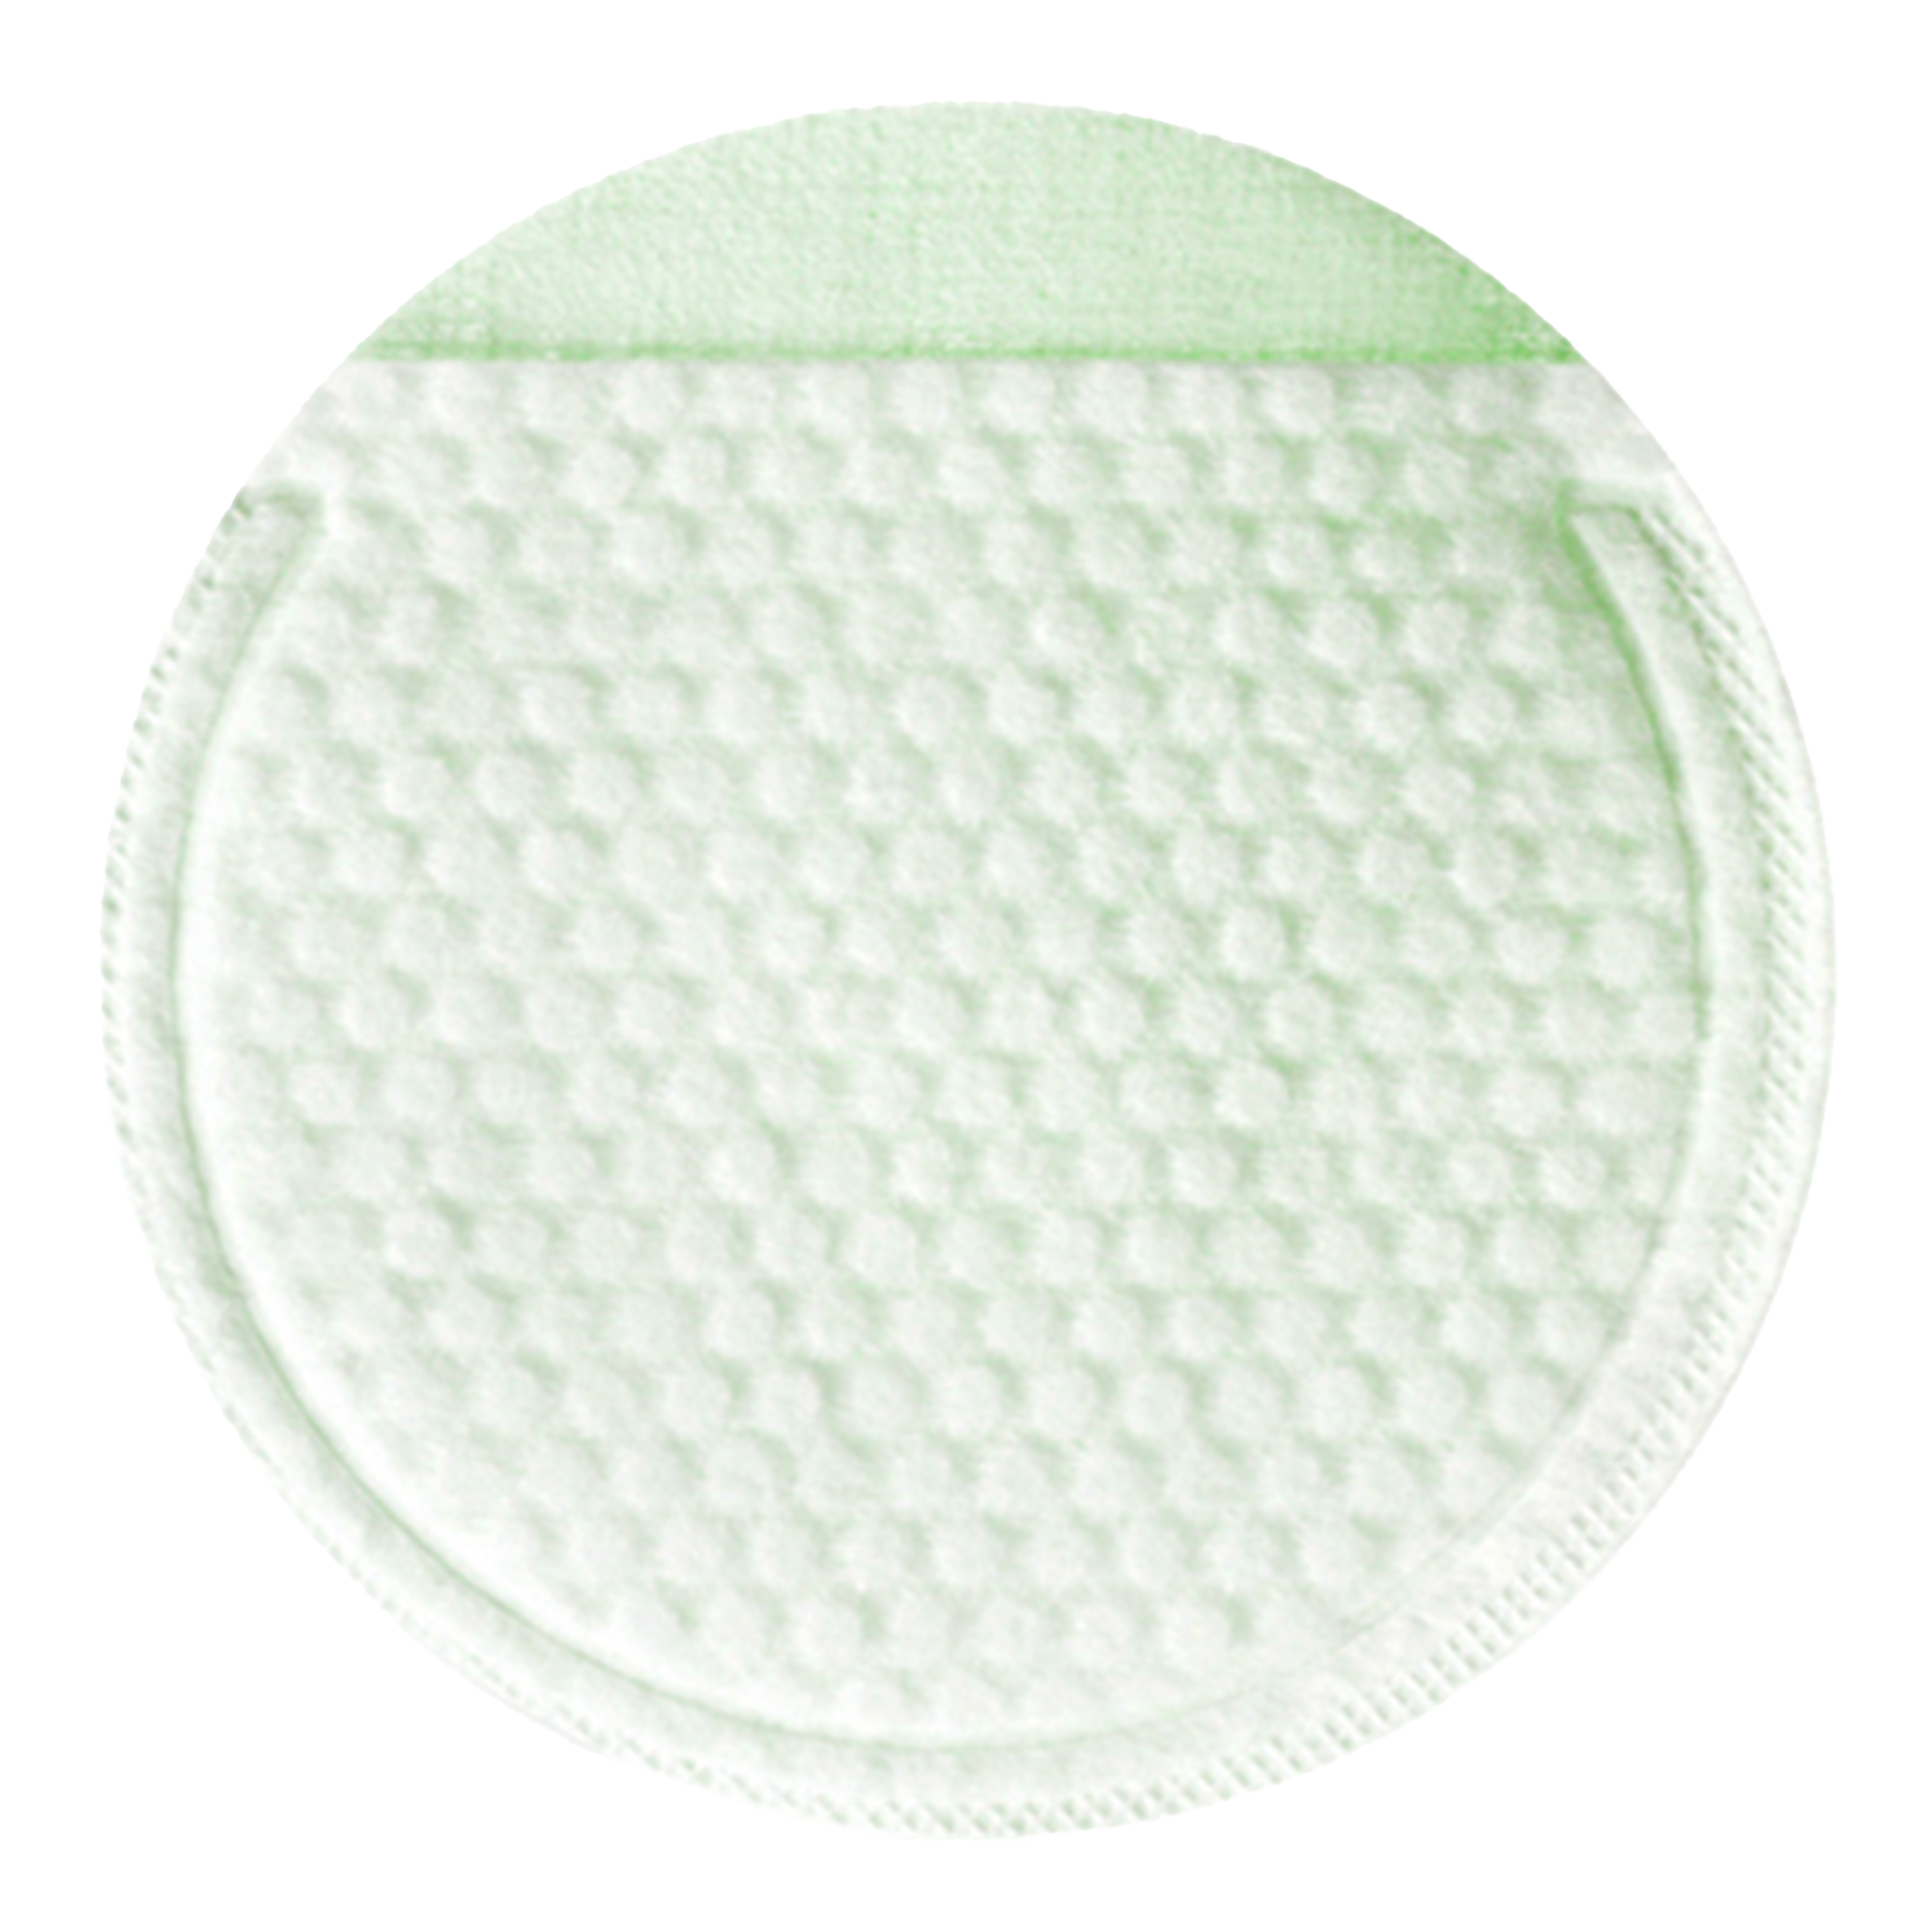 NEOGEN DERMALOGY Bio-Peel Gauze Peeling Green Tea 2.48 oz / 76ml (8 Pads)